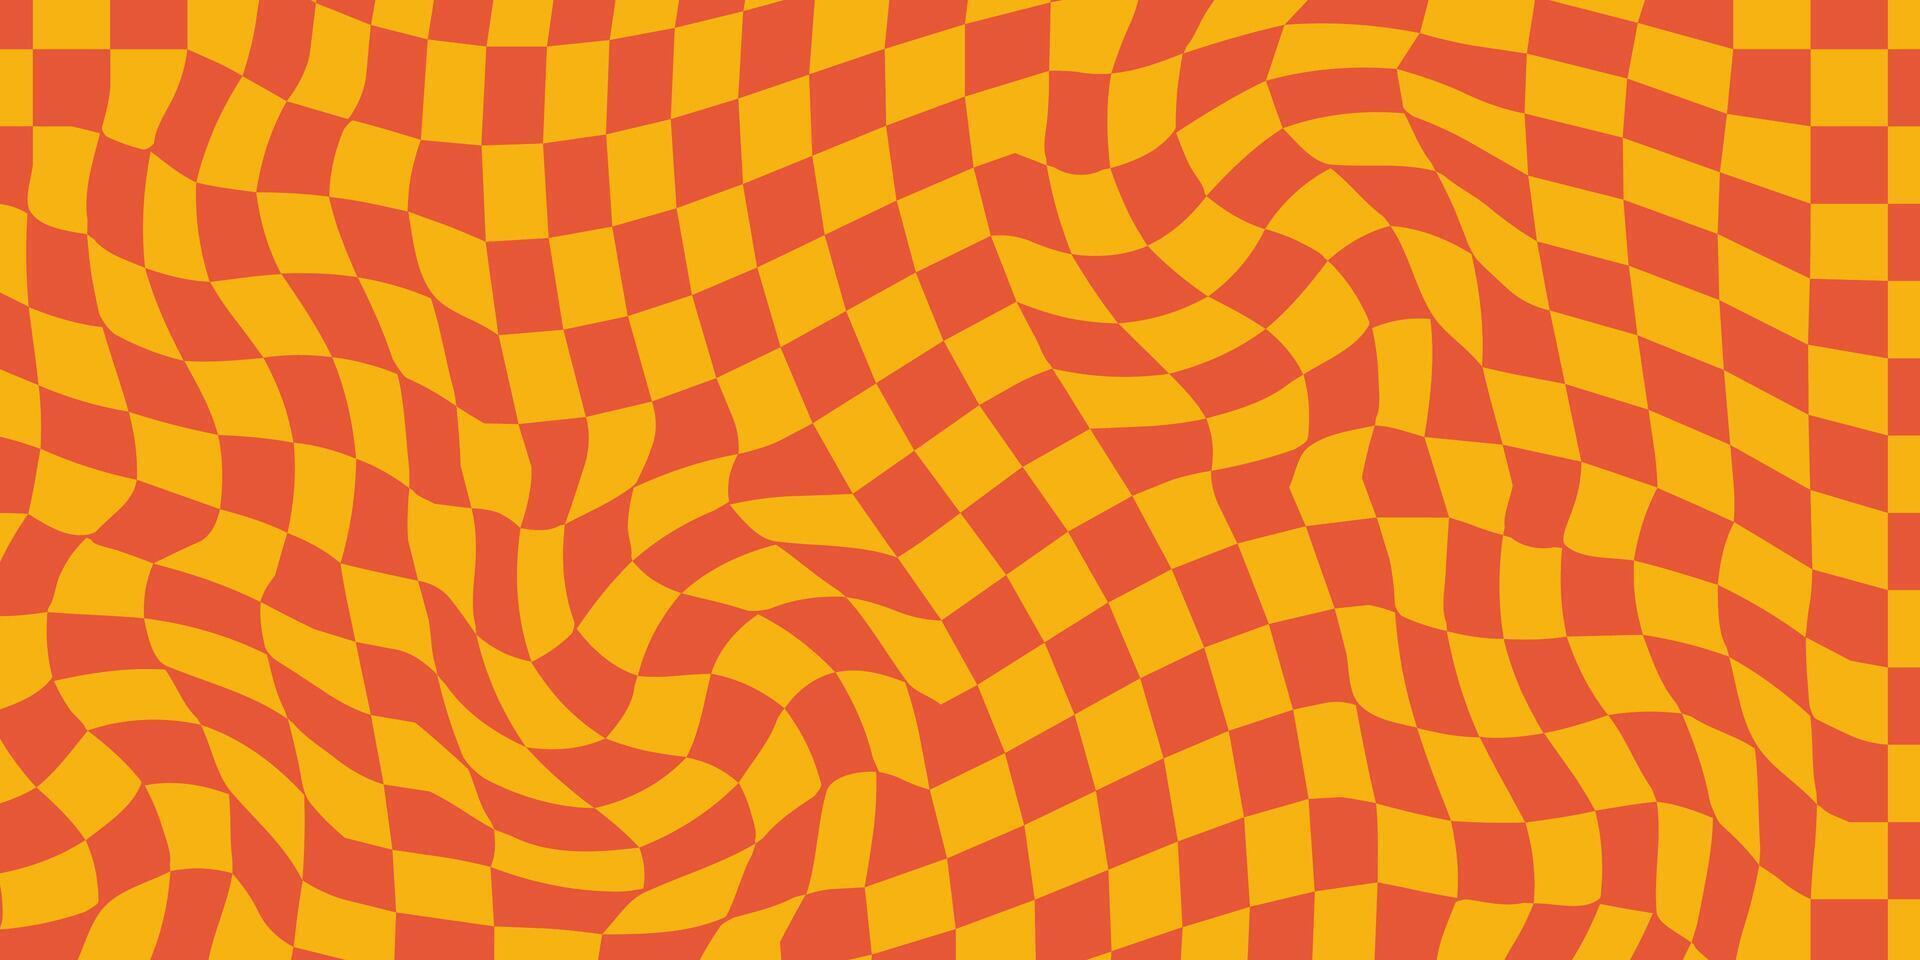 groovy schaakbord golven patronen. gedraaid en vervormd vector texturen brengen een modieus retro psychedelisch stijl. perfect voor y2k esthetisch in sinaasappels kleur paletten